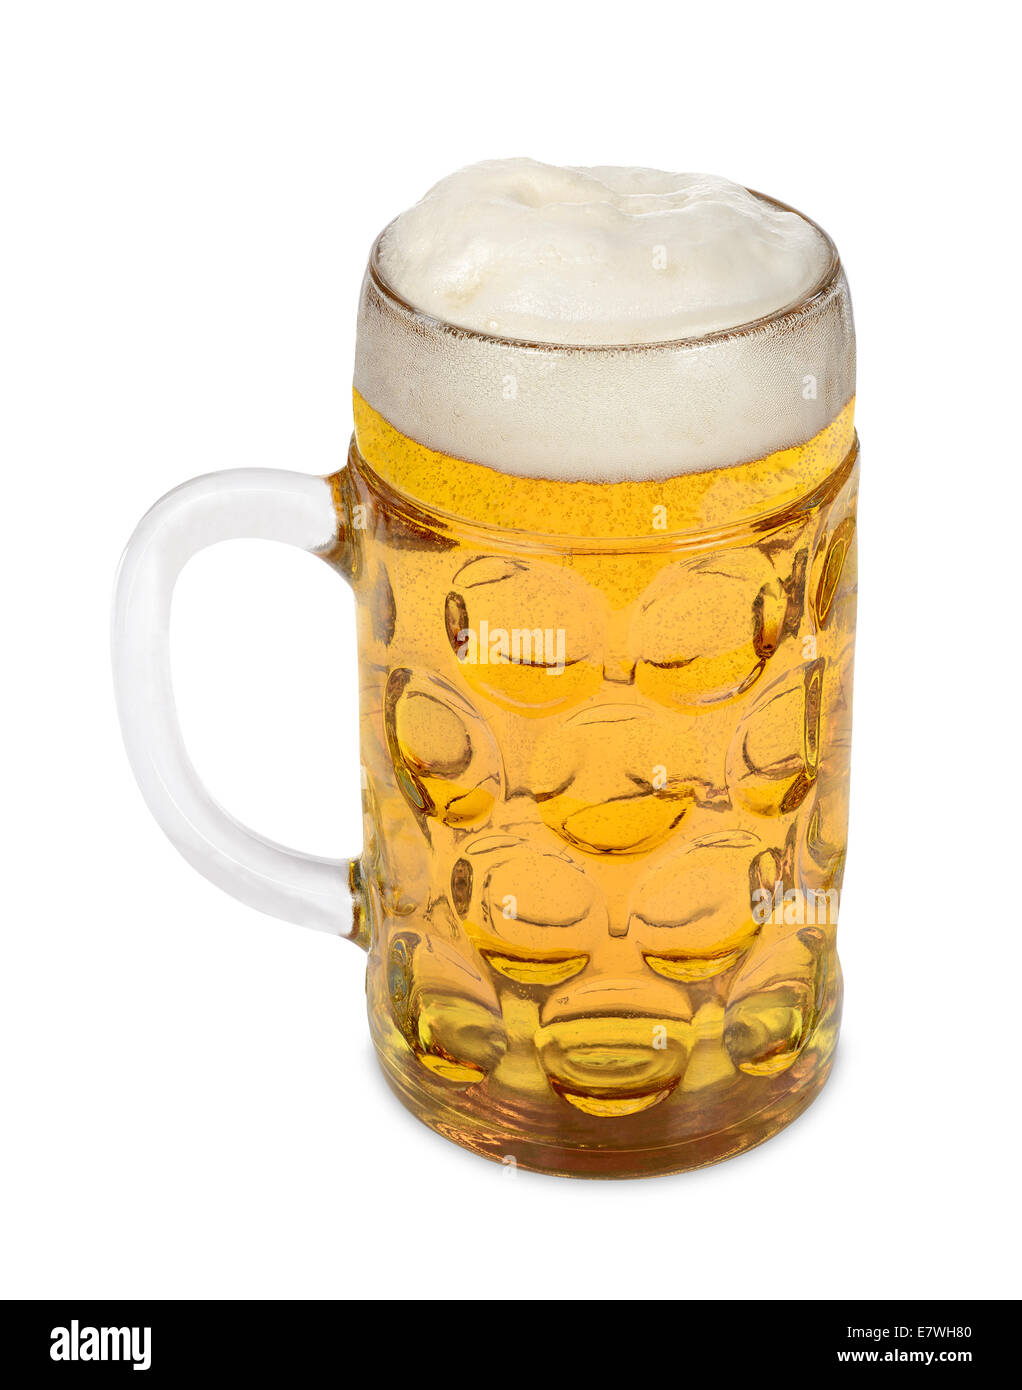 Bier Glas Masse Stockfotografie - Alamy